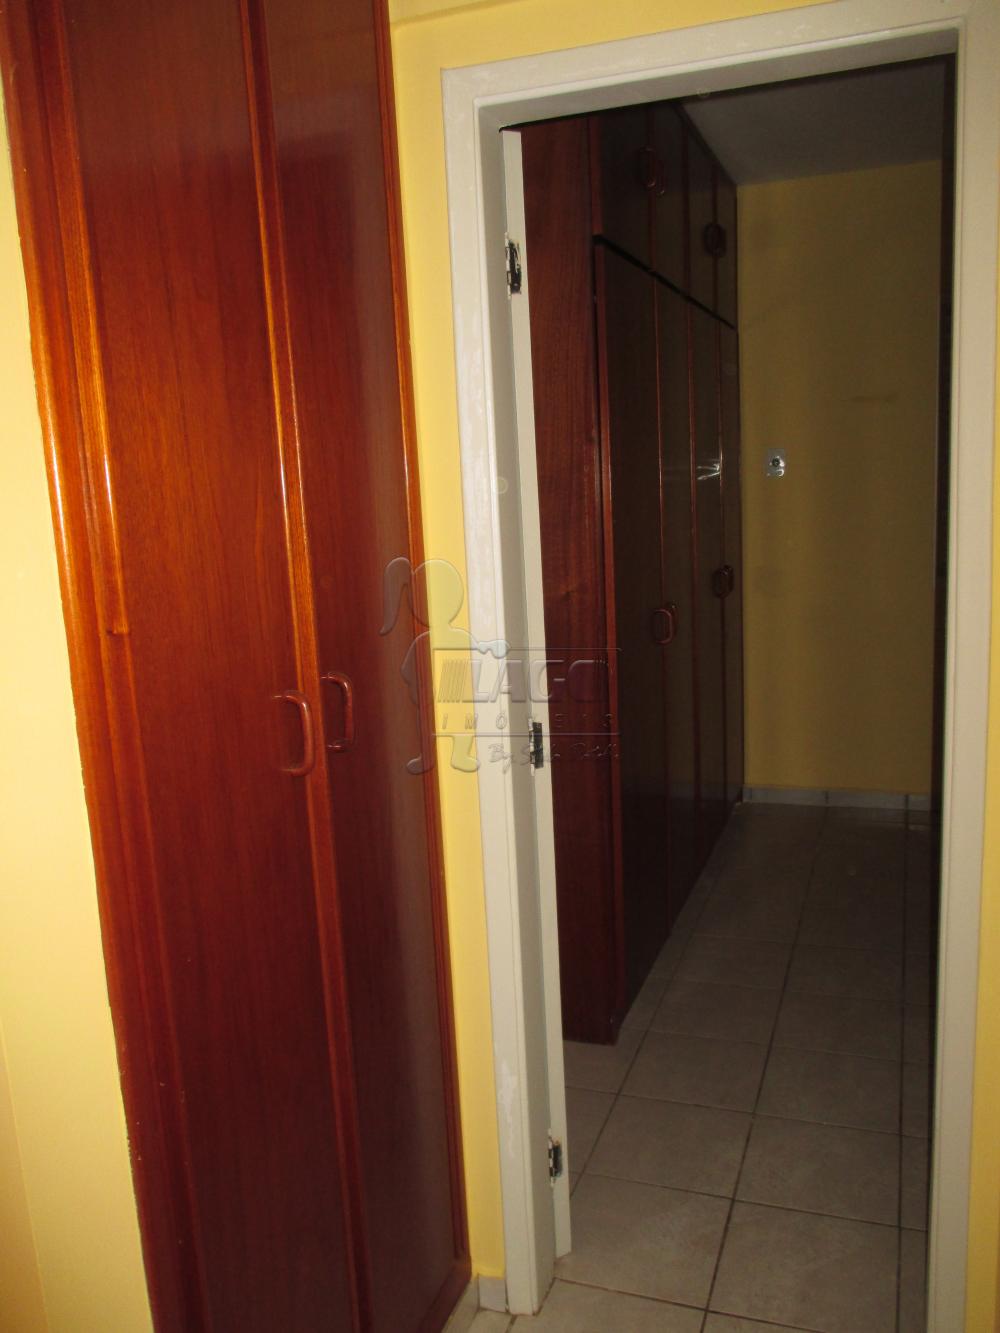 Alugar Apartamentos / Padrão em Ribeirão Preto R$ 860,00 - Foto 3